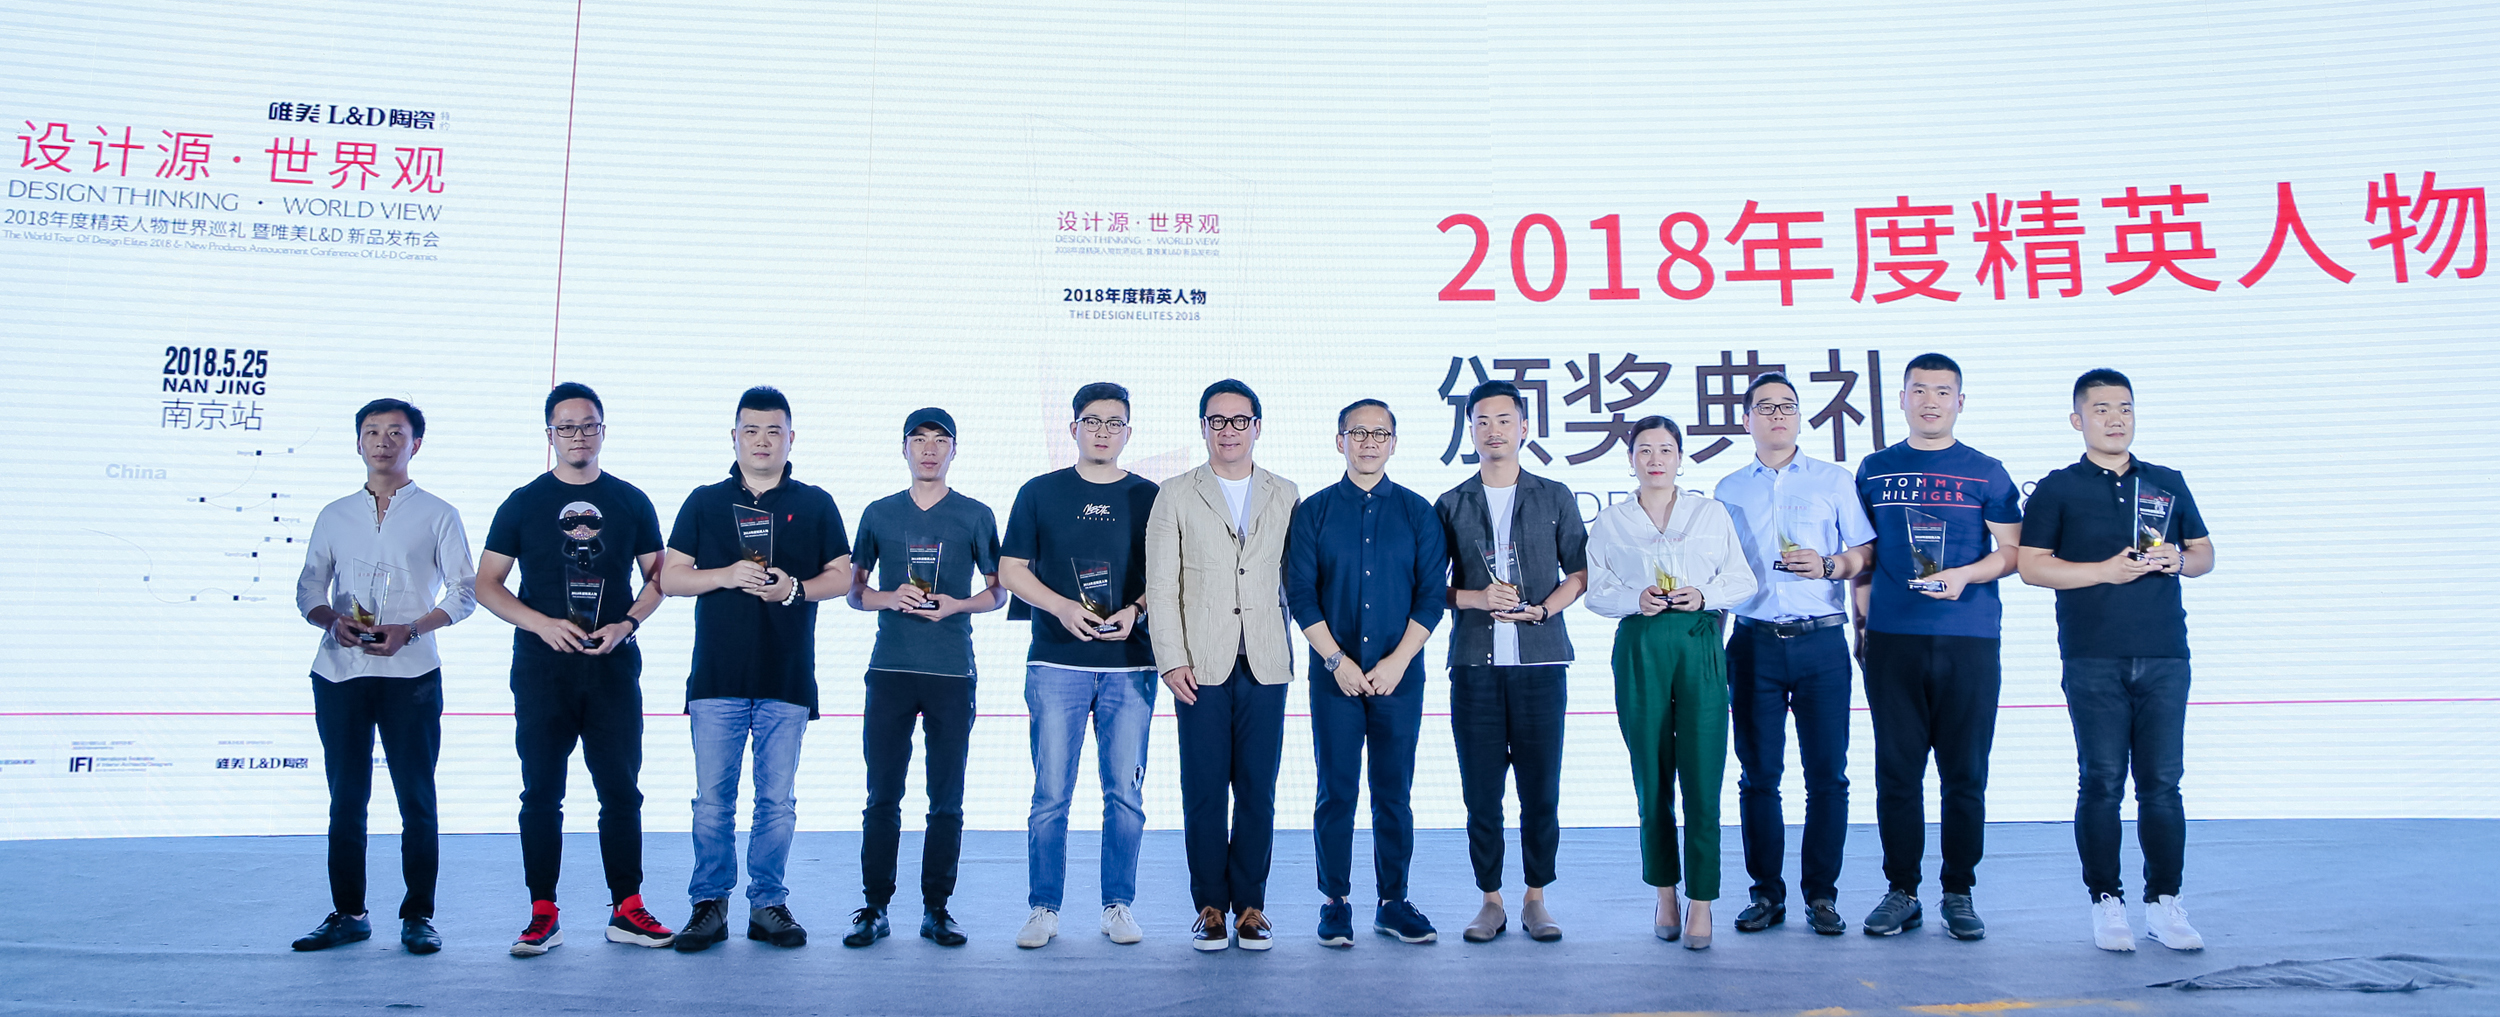 孙法鹏参加《2018年度精英人物》颁奖典礼